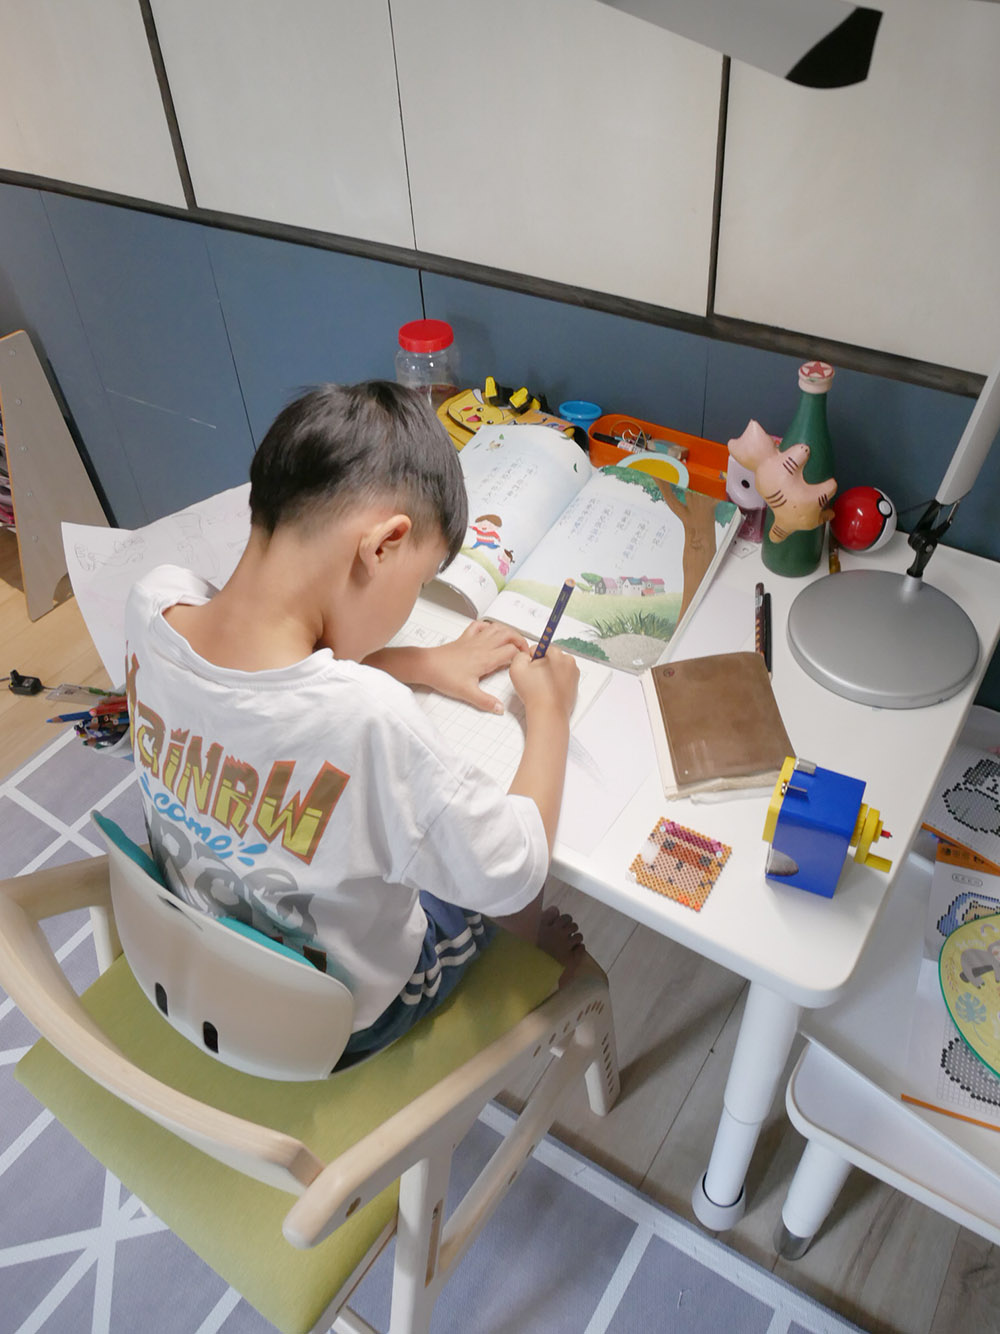 [啾團] 韓國-Curble Grand 3D護脊美學椅減少駝背機會,讓身體的自然而然挺直(Curble Kids 3D護脊美學椅)